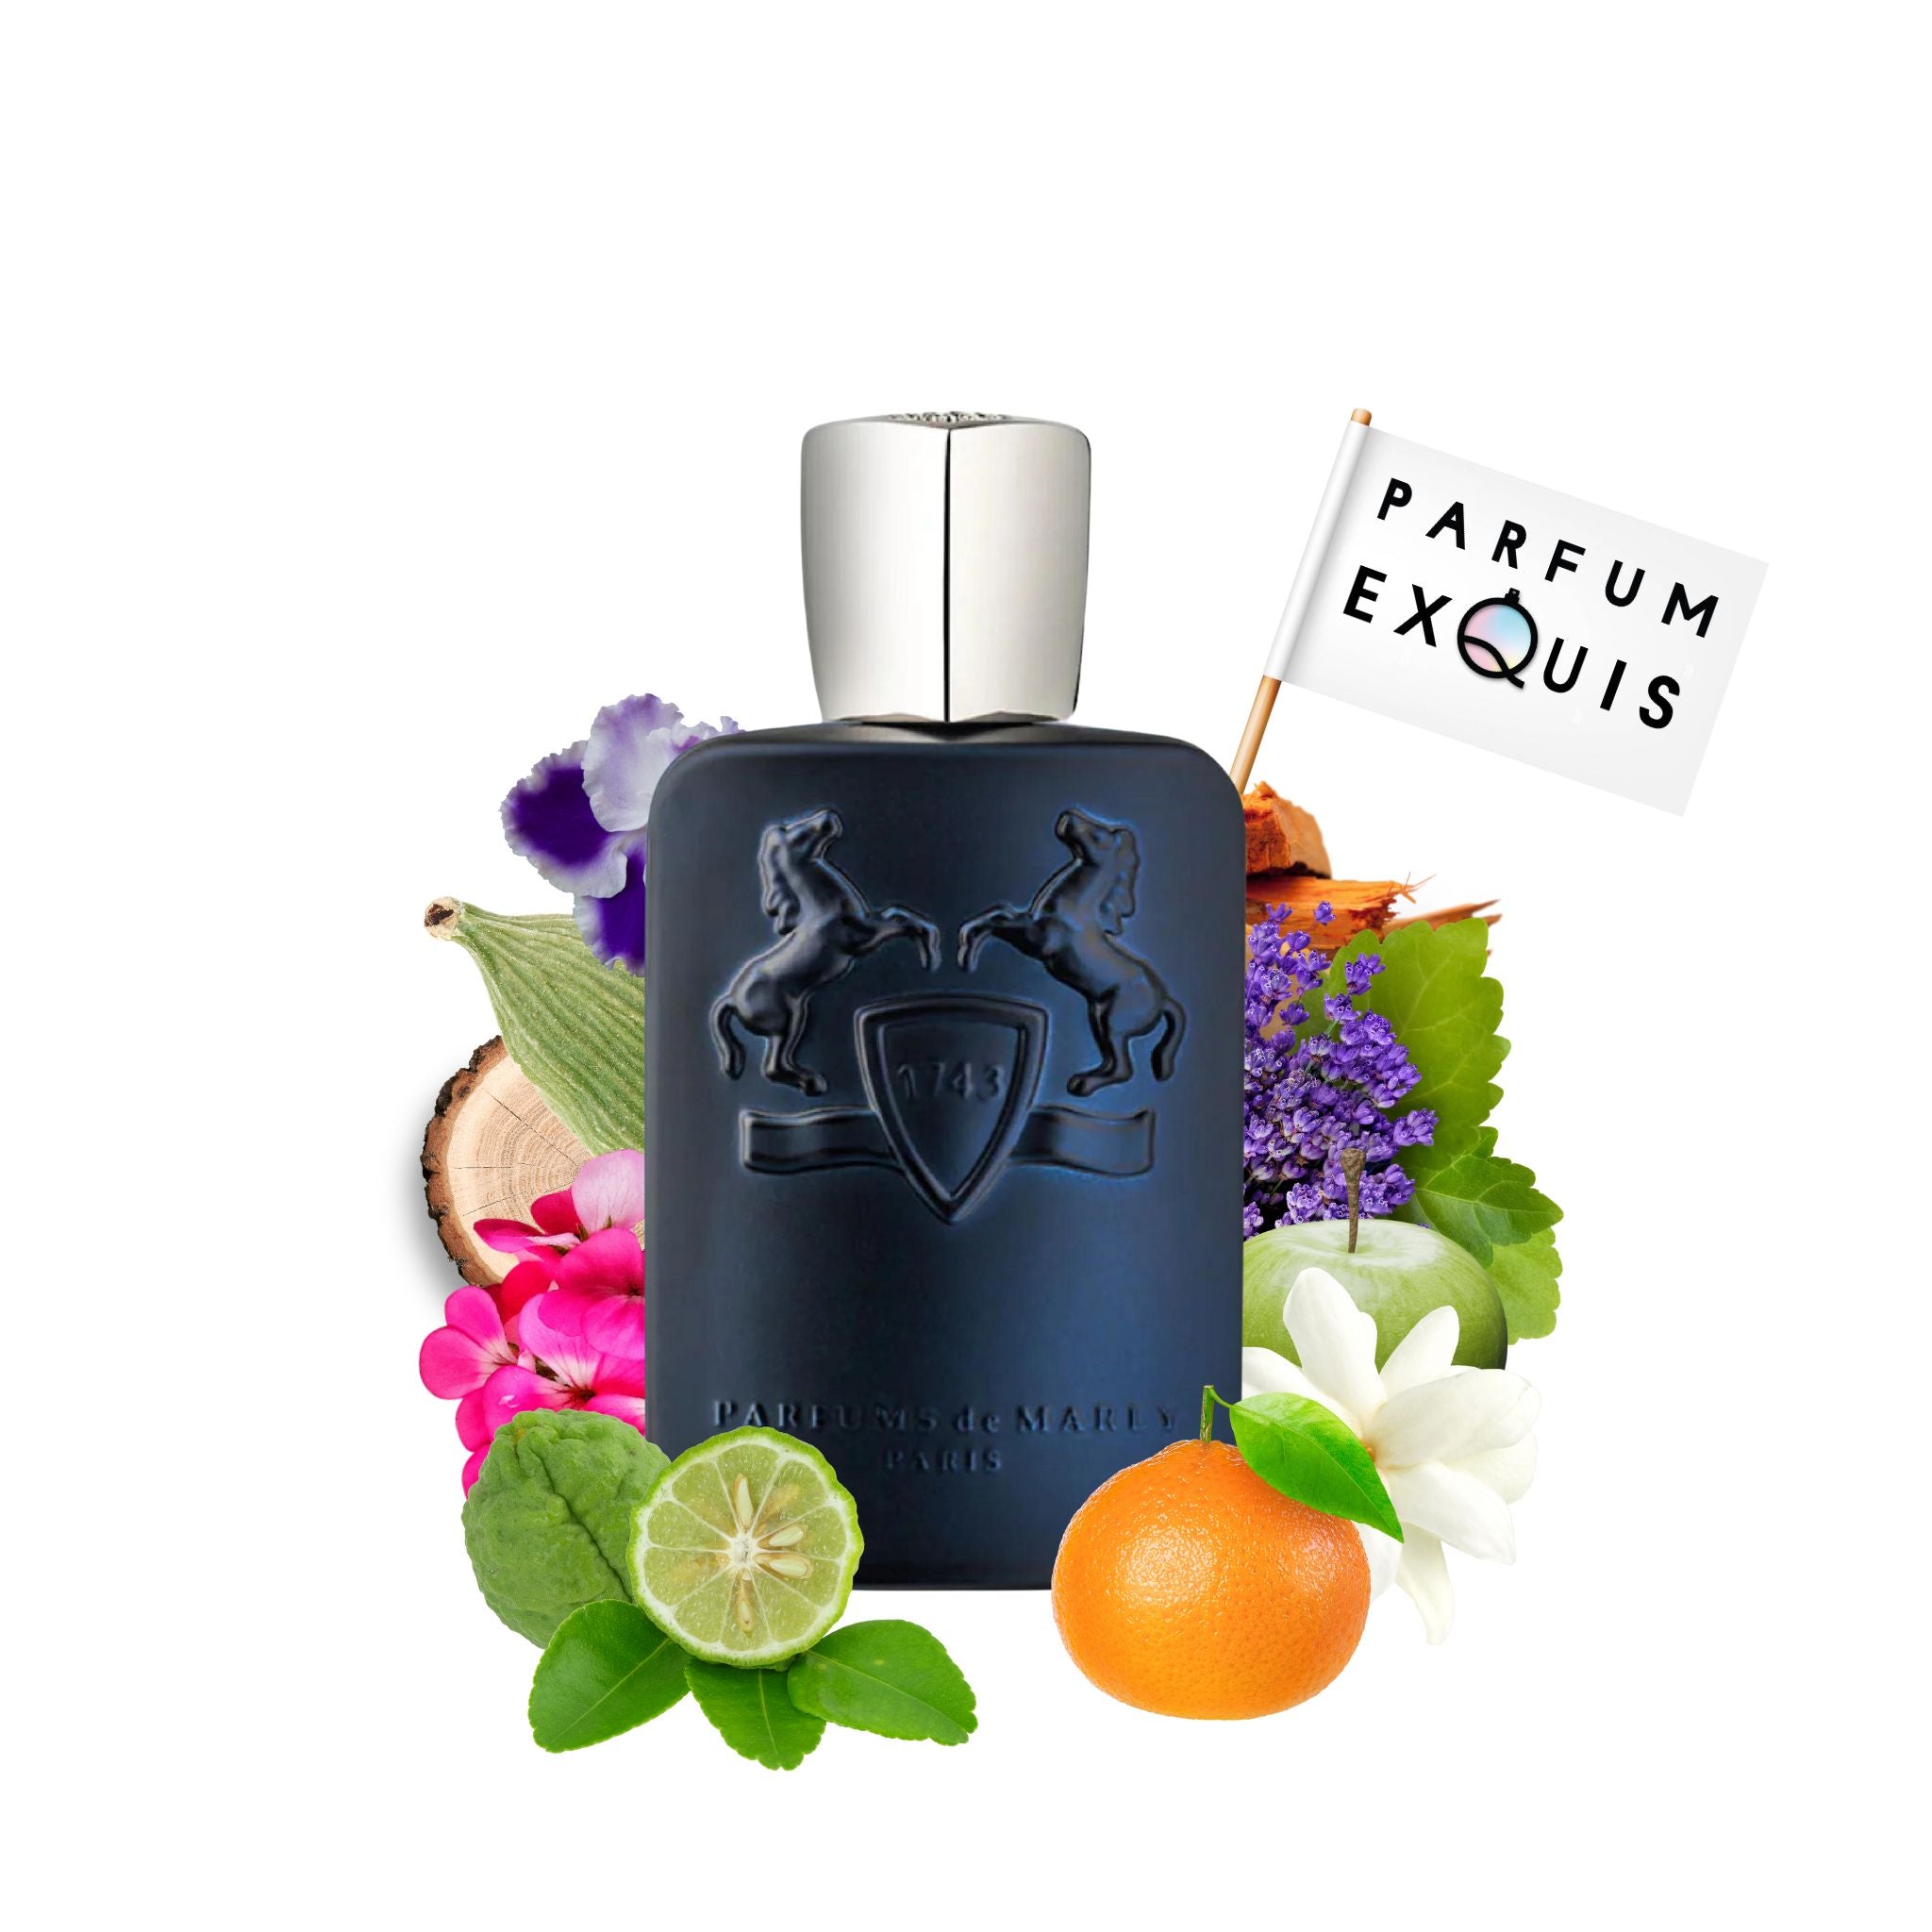 Layton Parfums de Marly